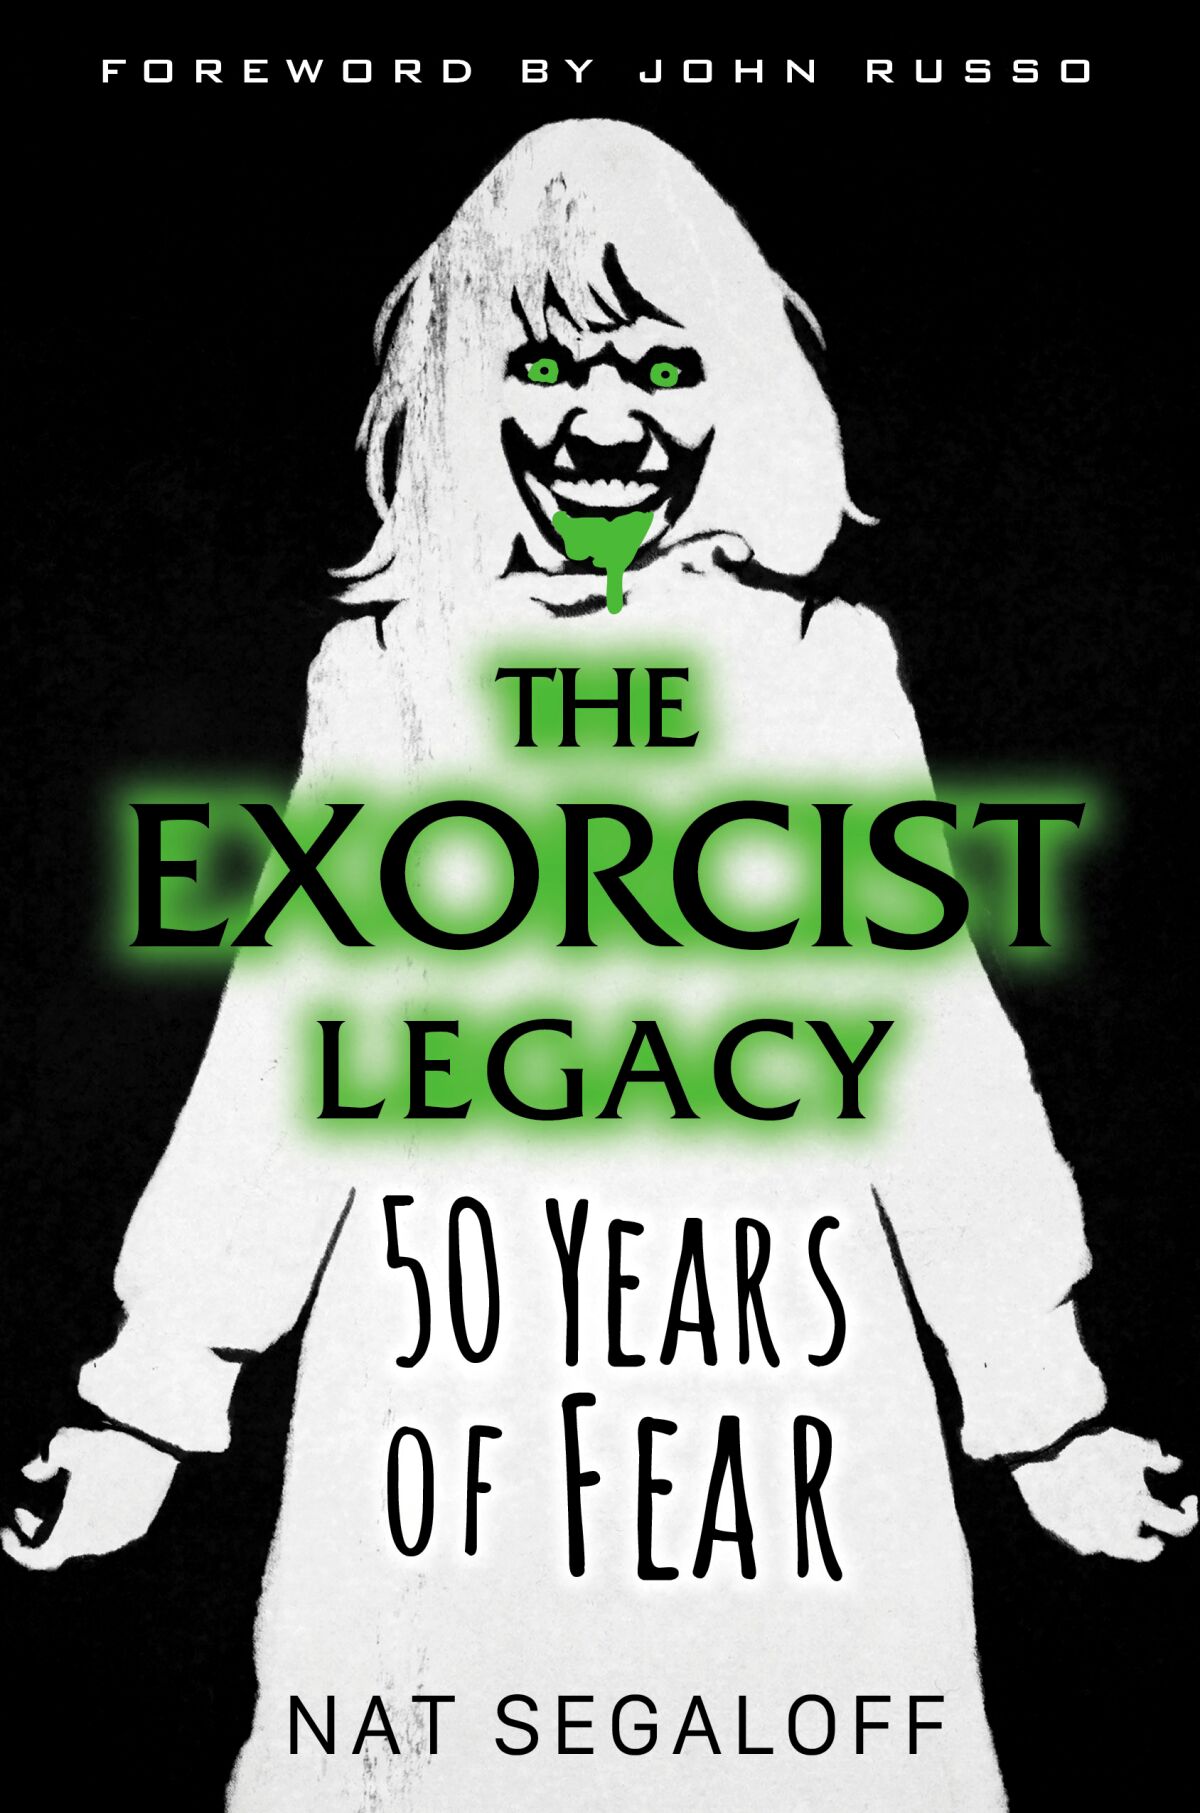 "Exorcist Mirası: 50 Yıllık Korku" kaydeden Nat Segaloff